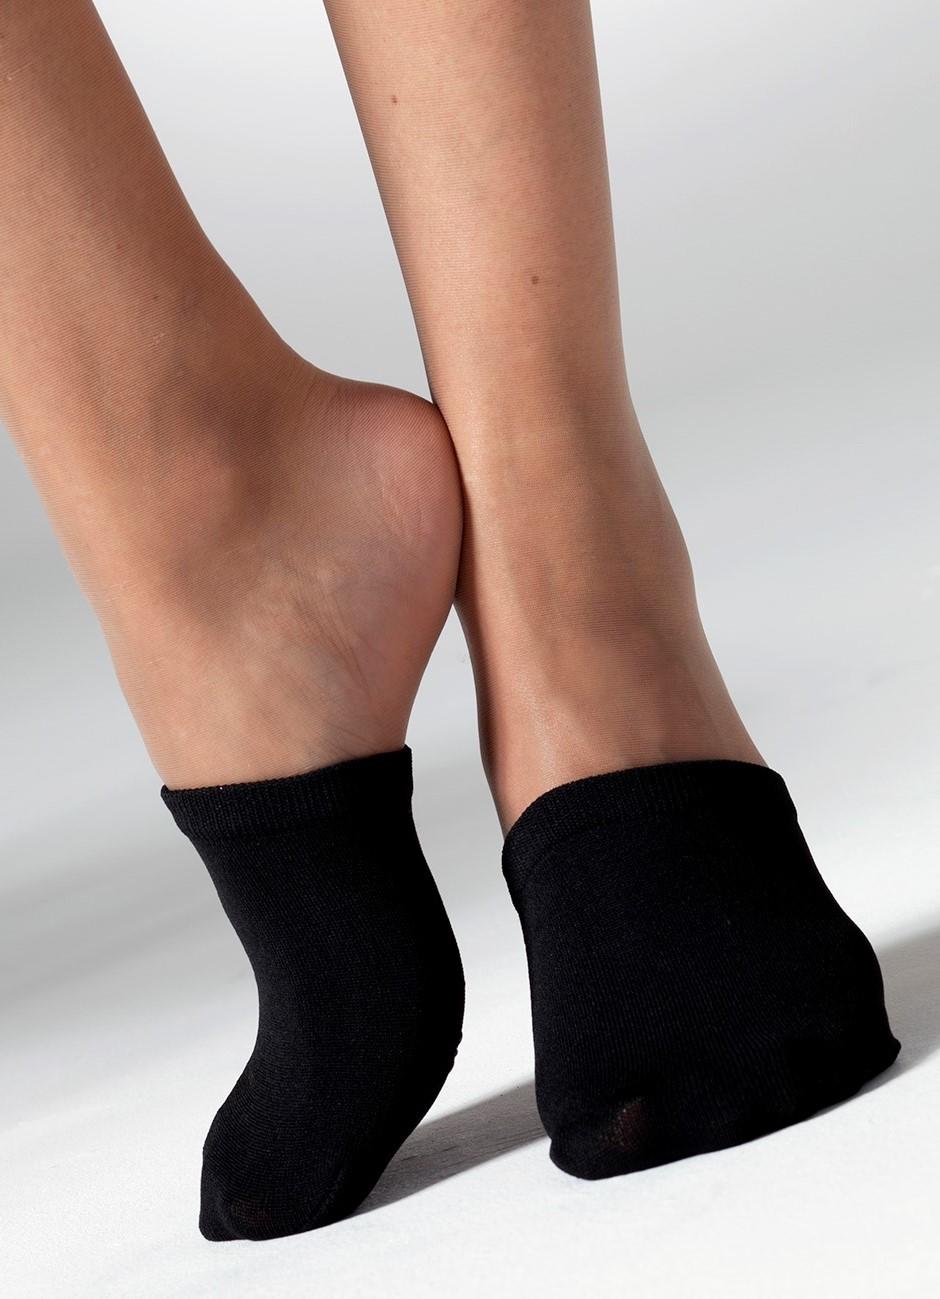 Gipsy Mule Socks - Half Foot Socks - Toe Covers - 2 Pair Pack